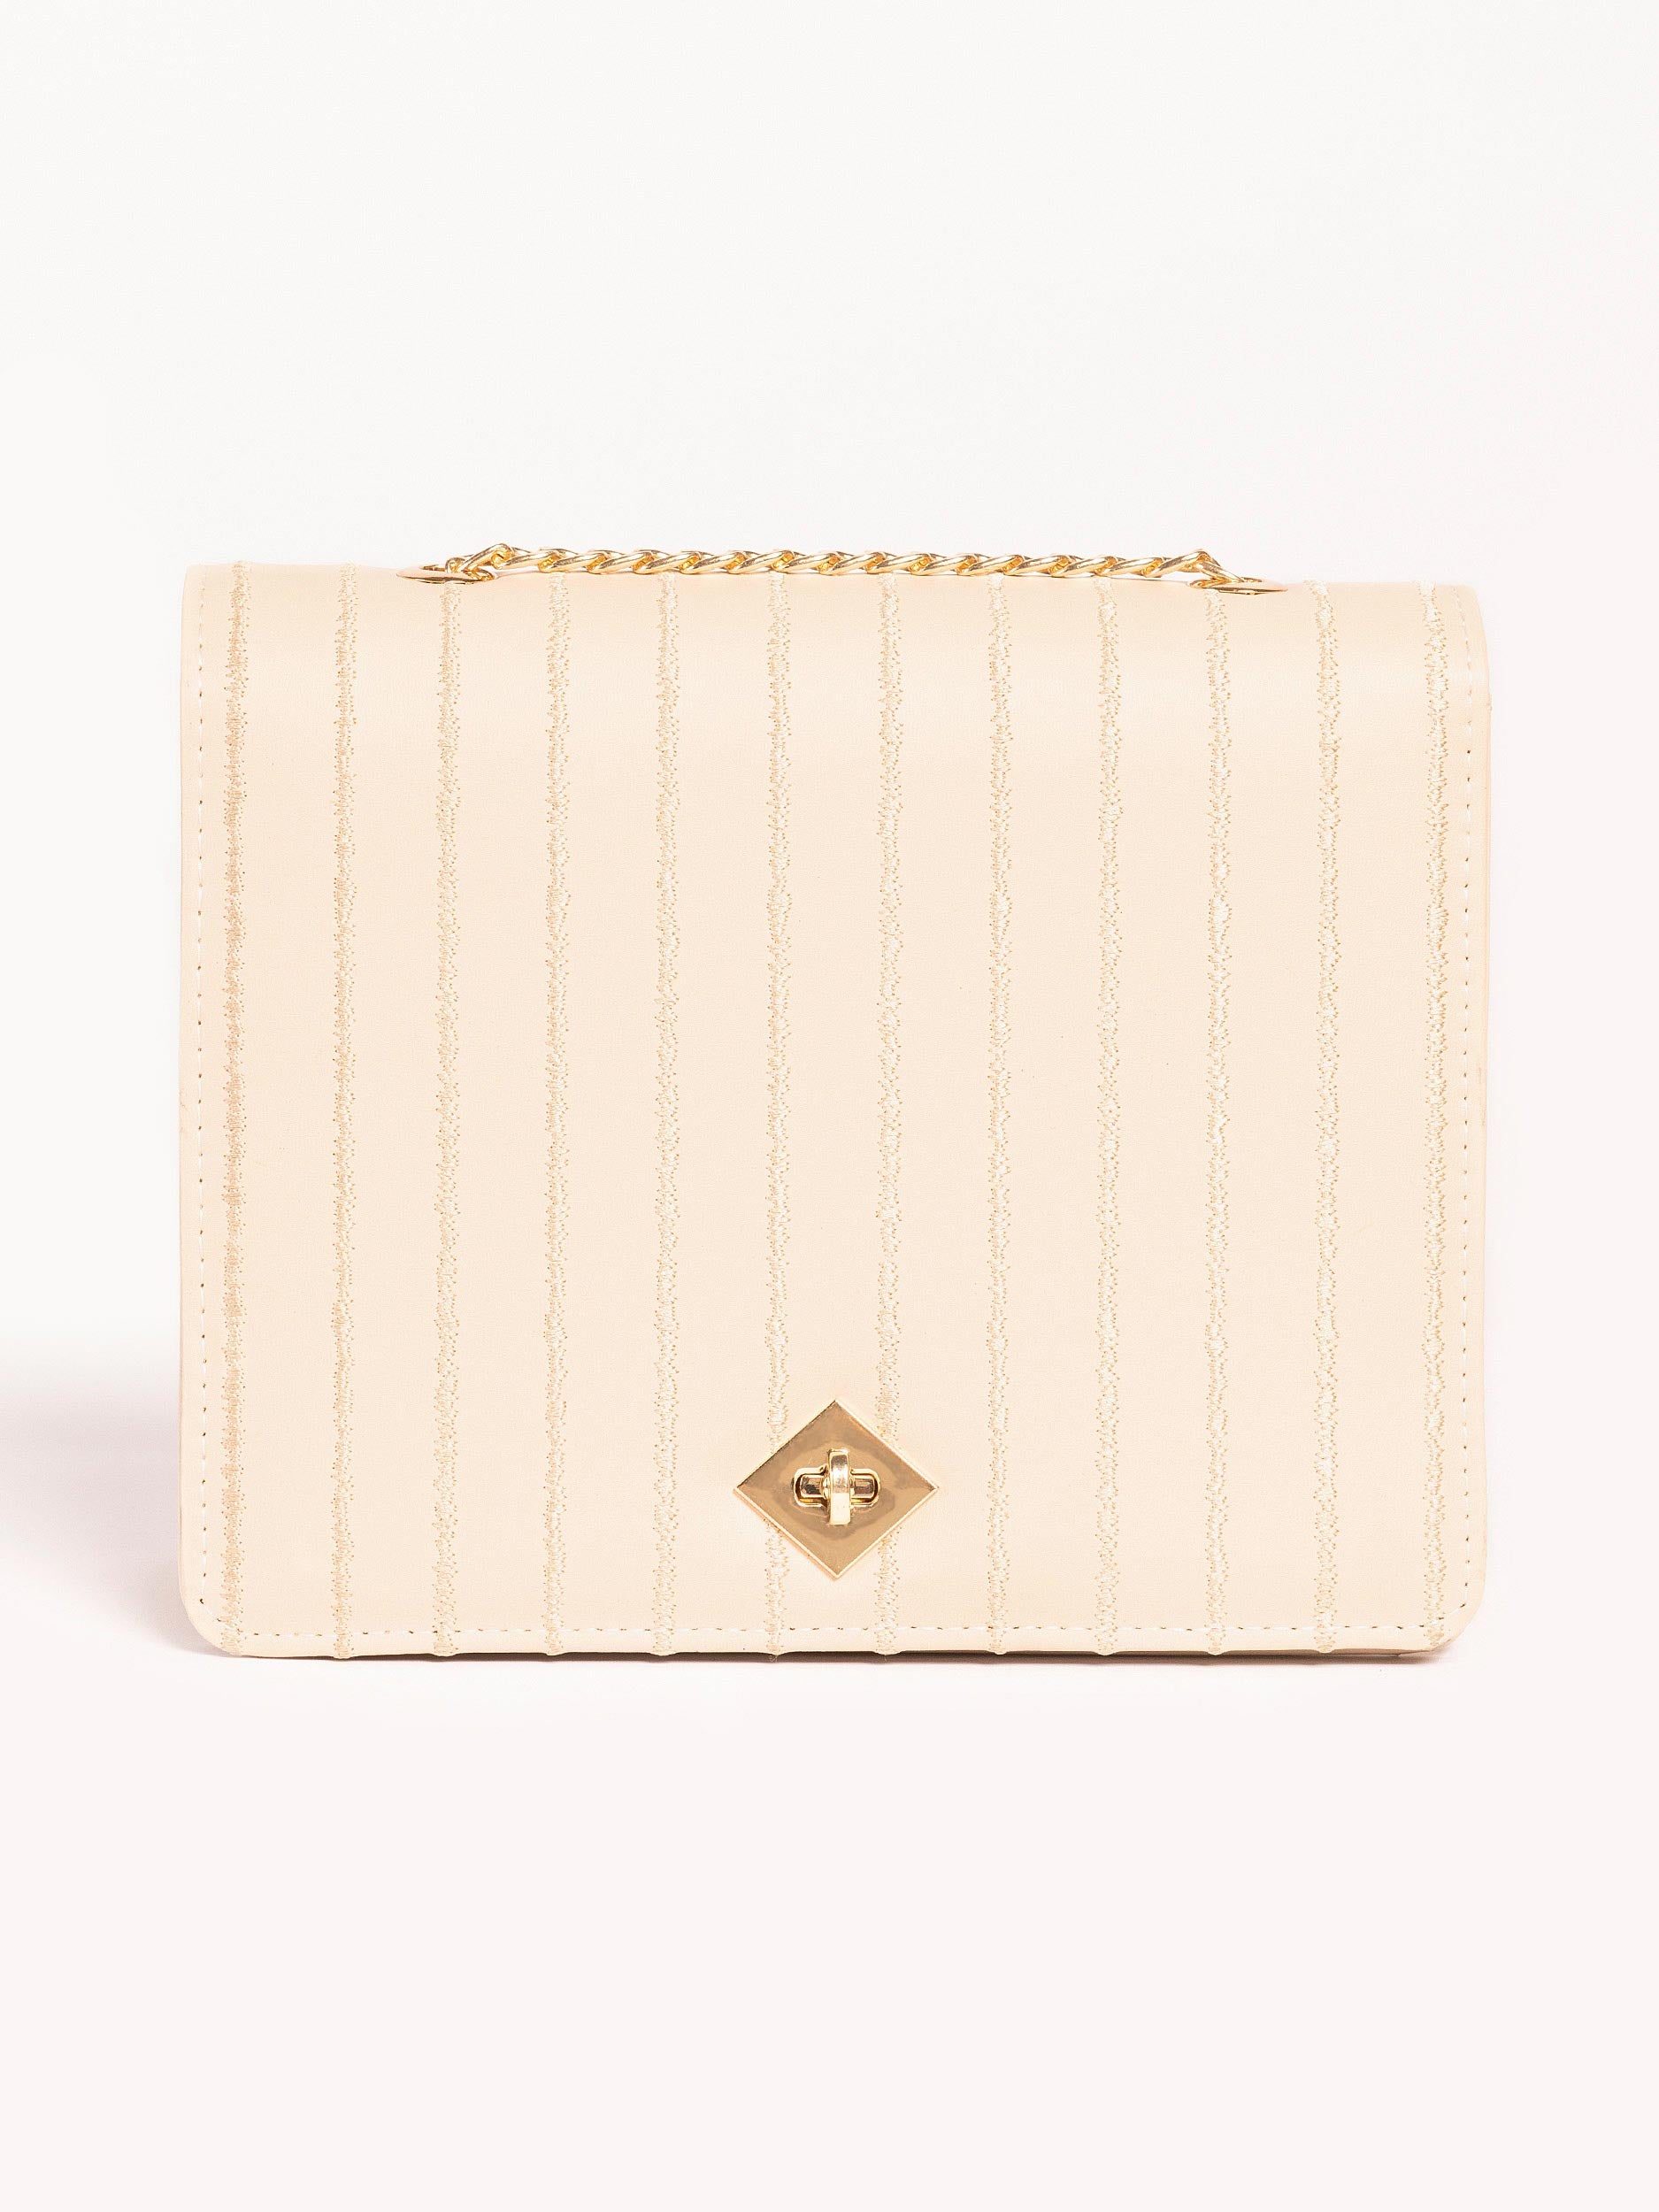 embroidered-box-style-handbag